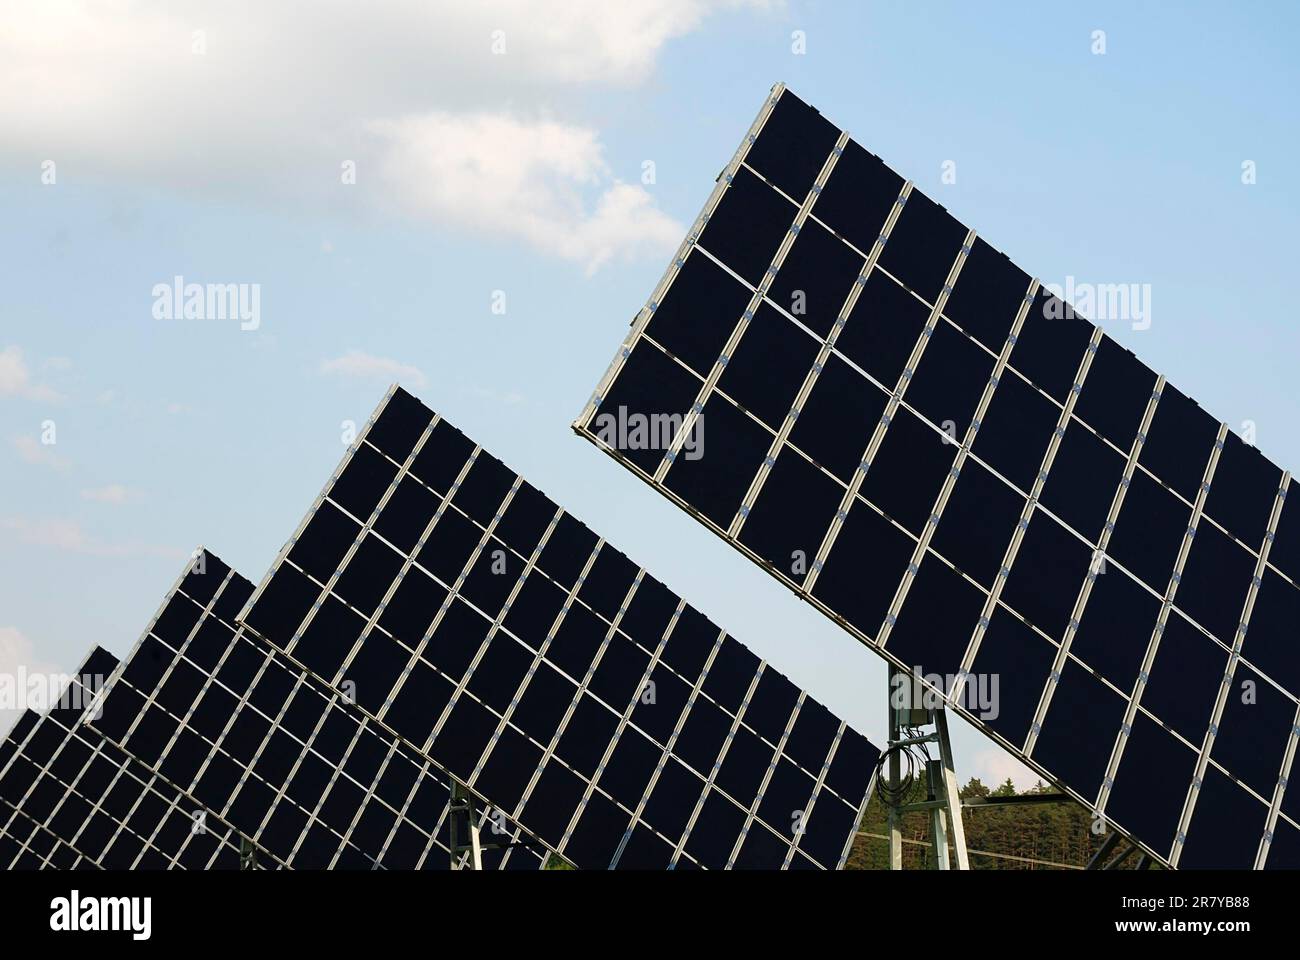 Renewable energy with huge solar panels Stock Photo